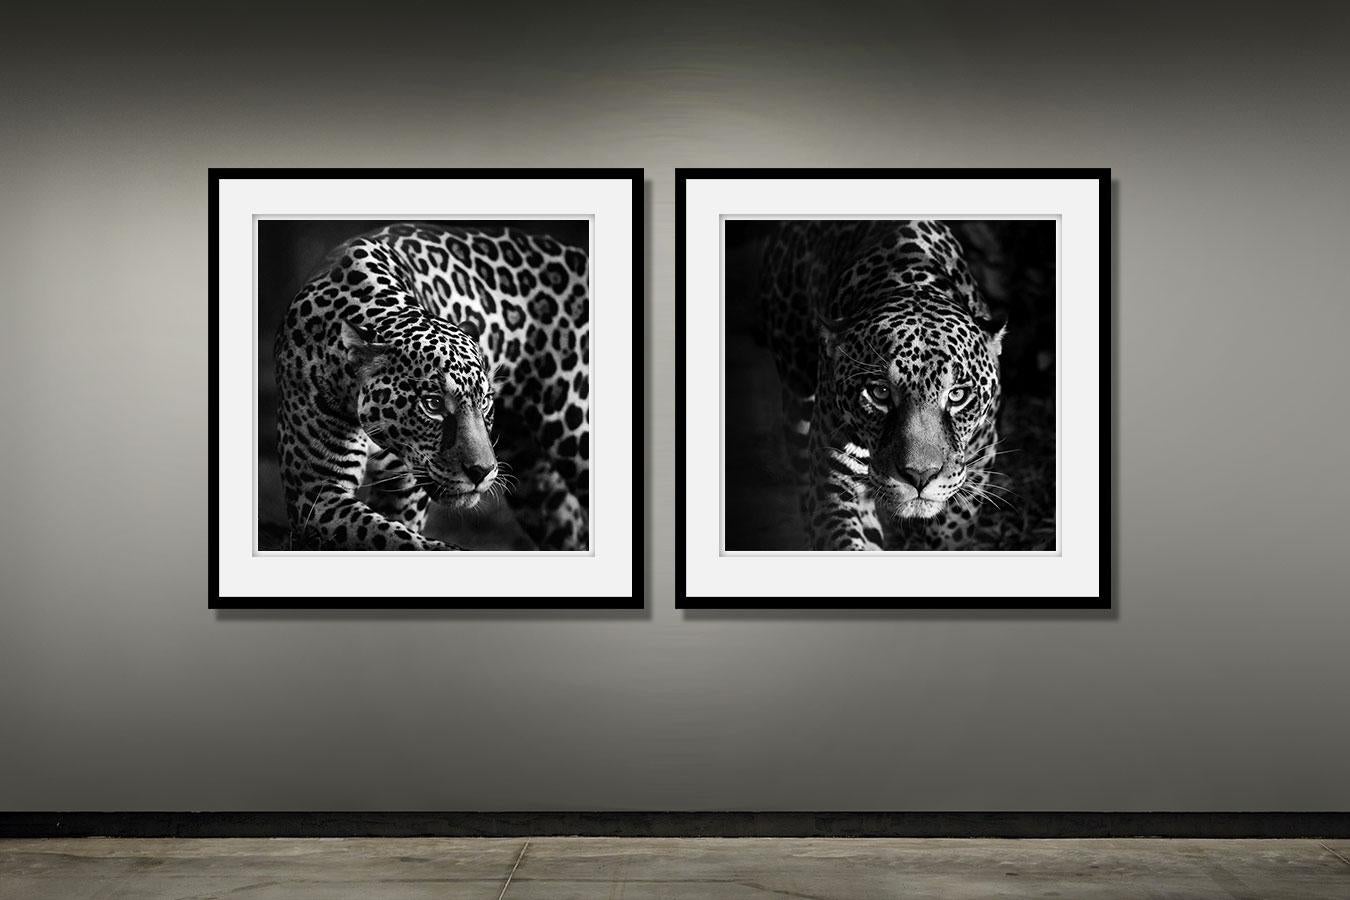 Les yeux d'un jaguar (Impression animalière, photographie en noir et blanc) - Print de Paulo Behar